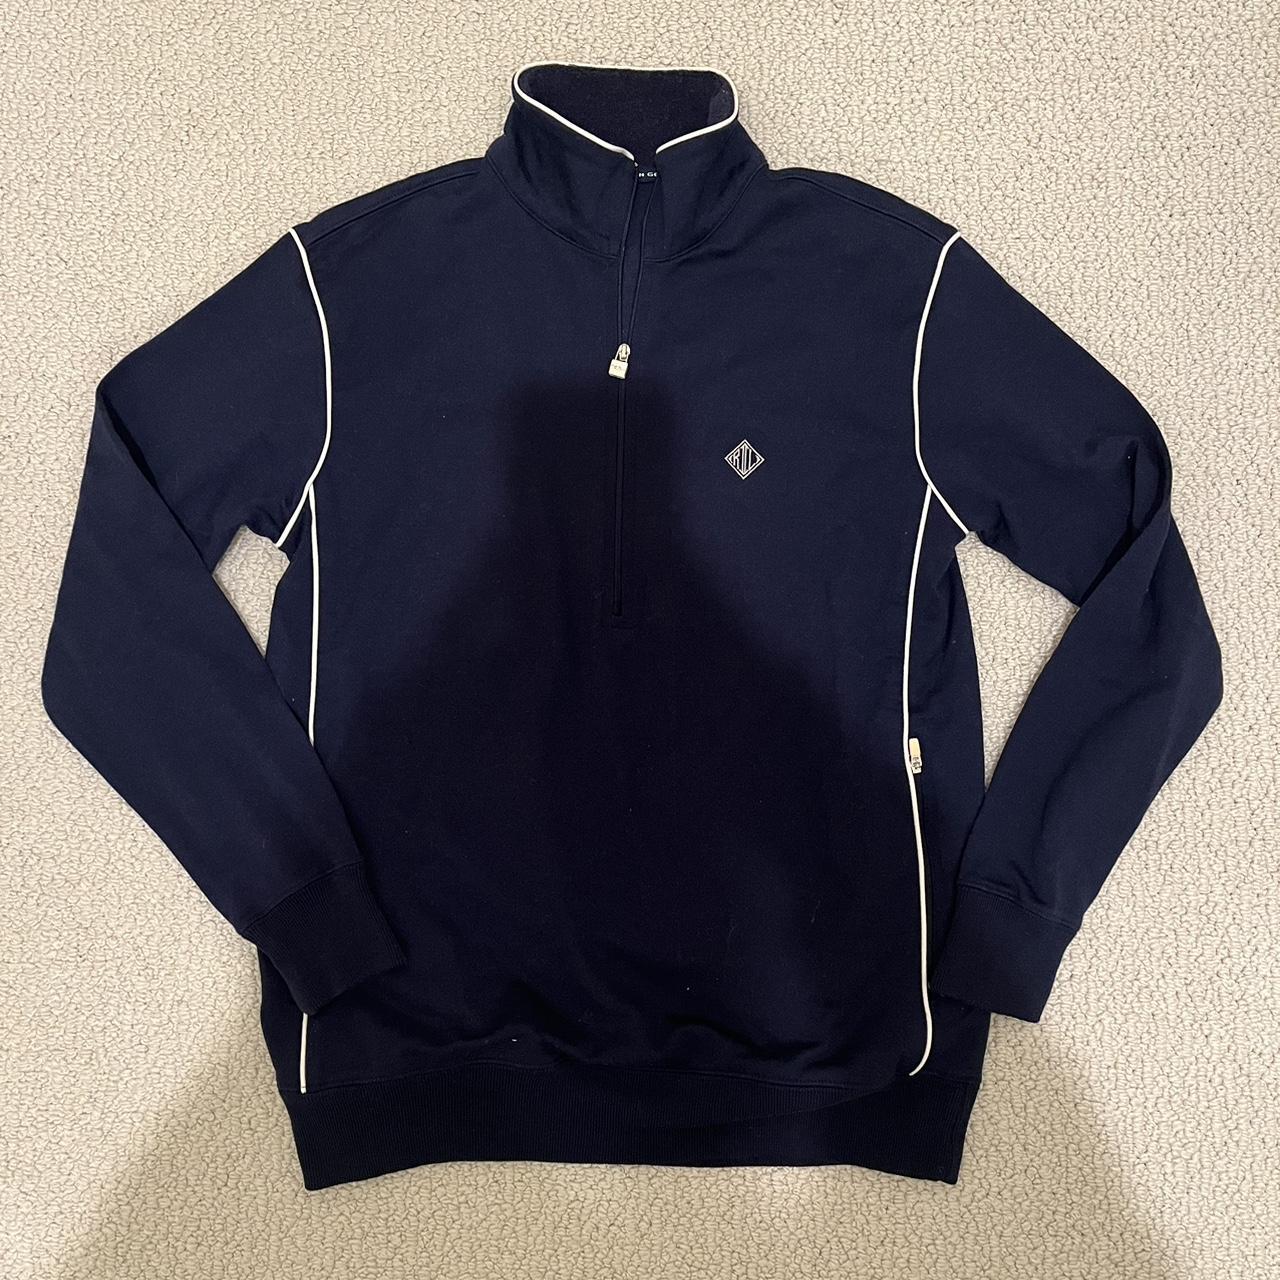 Ralph Lauren Golf Half Zip Sweatshirt #ralphlauren... - Depop